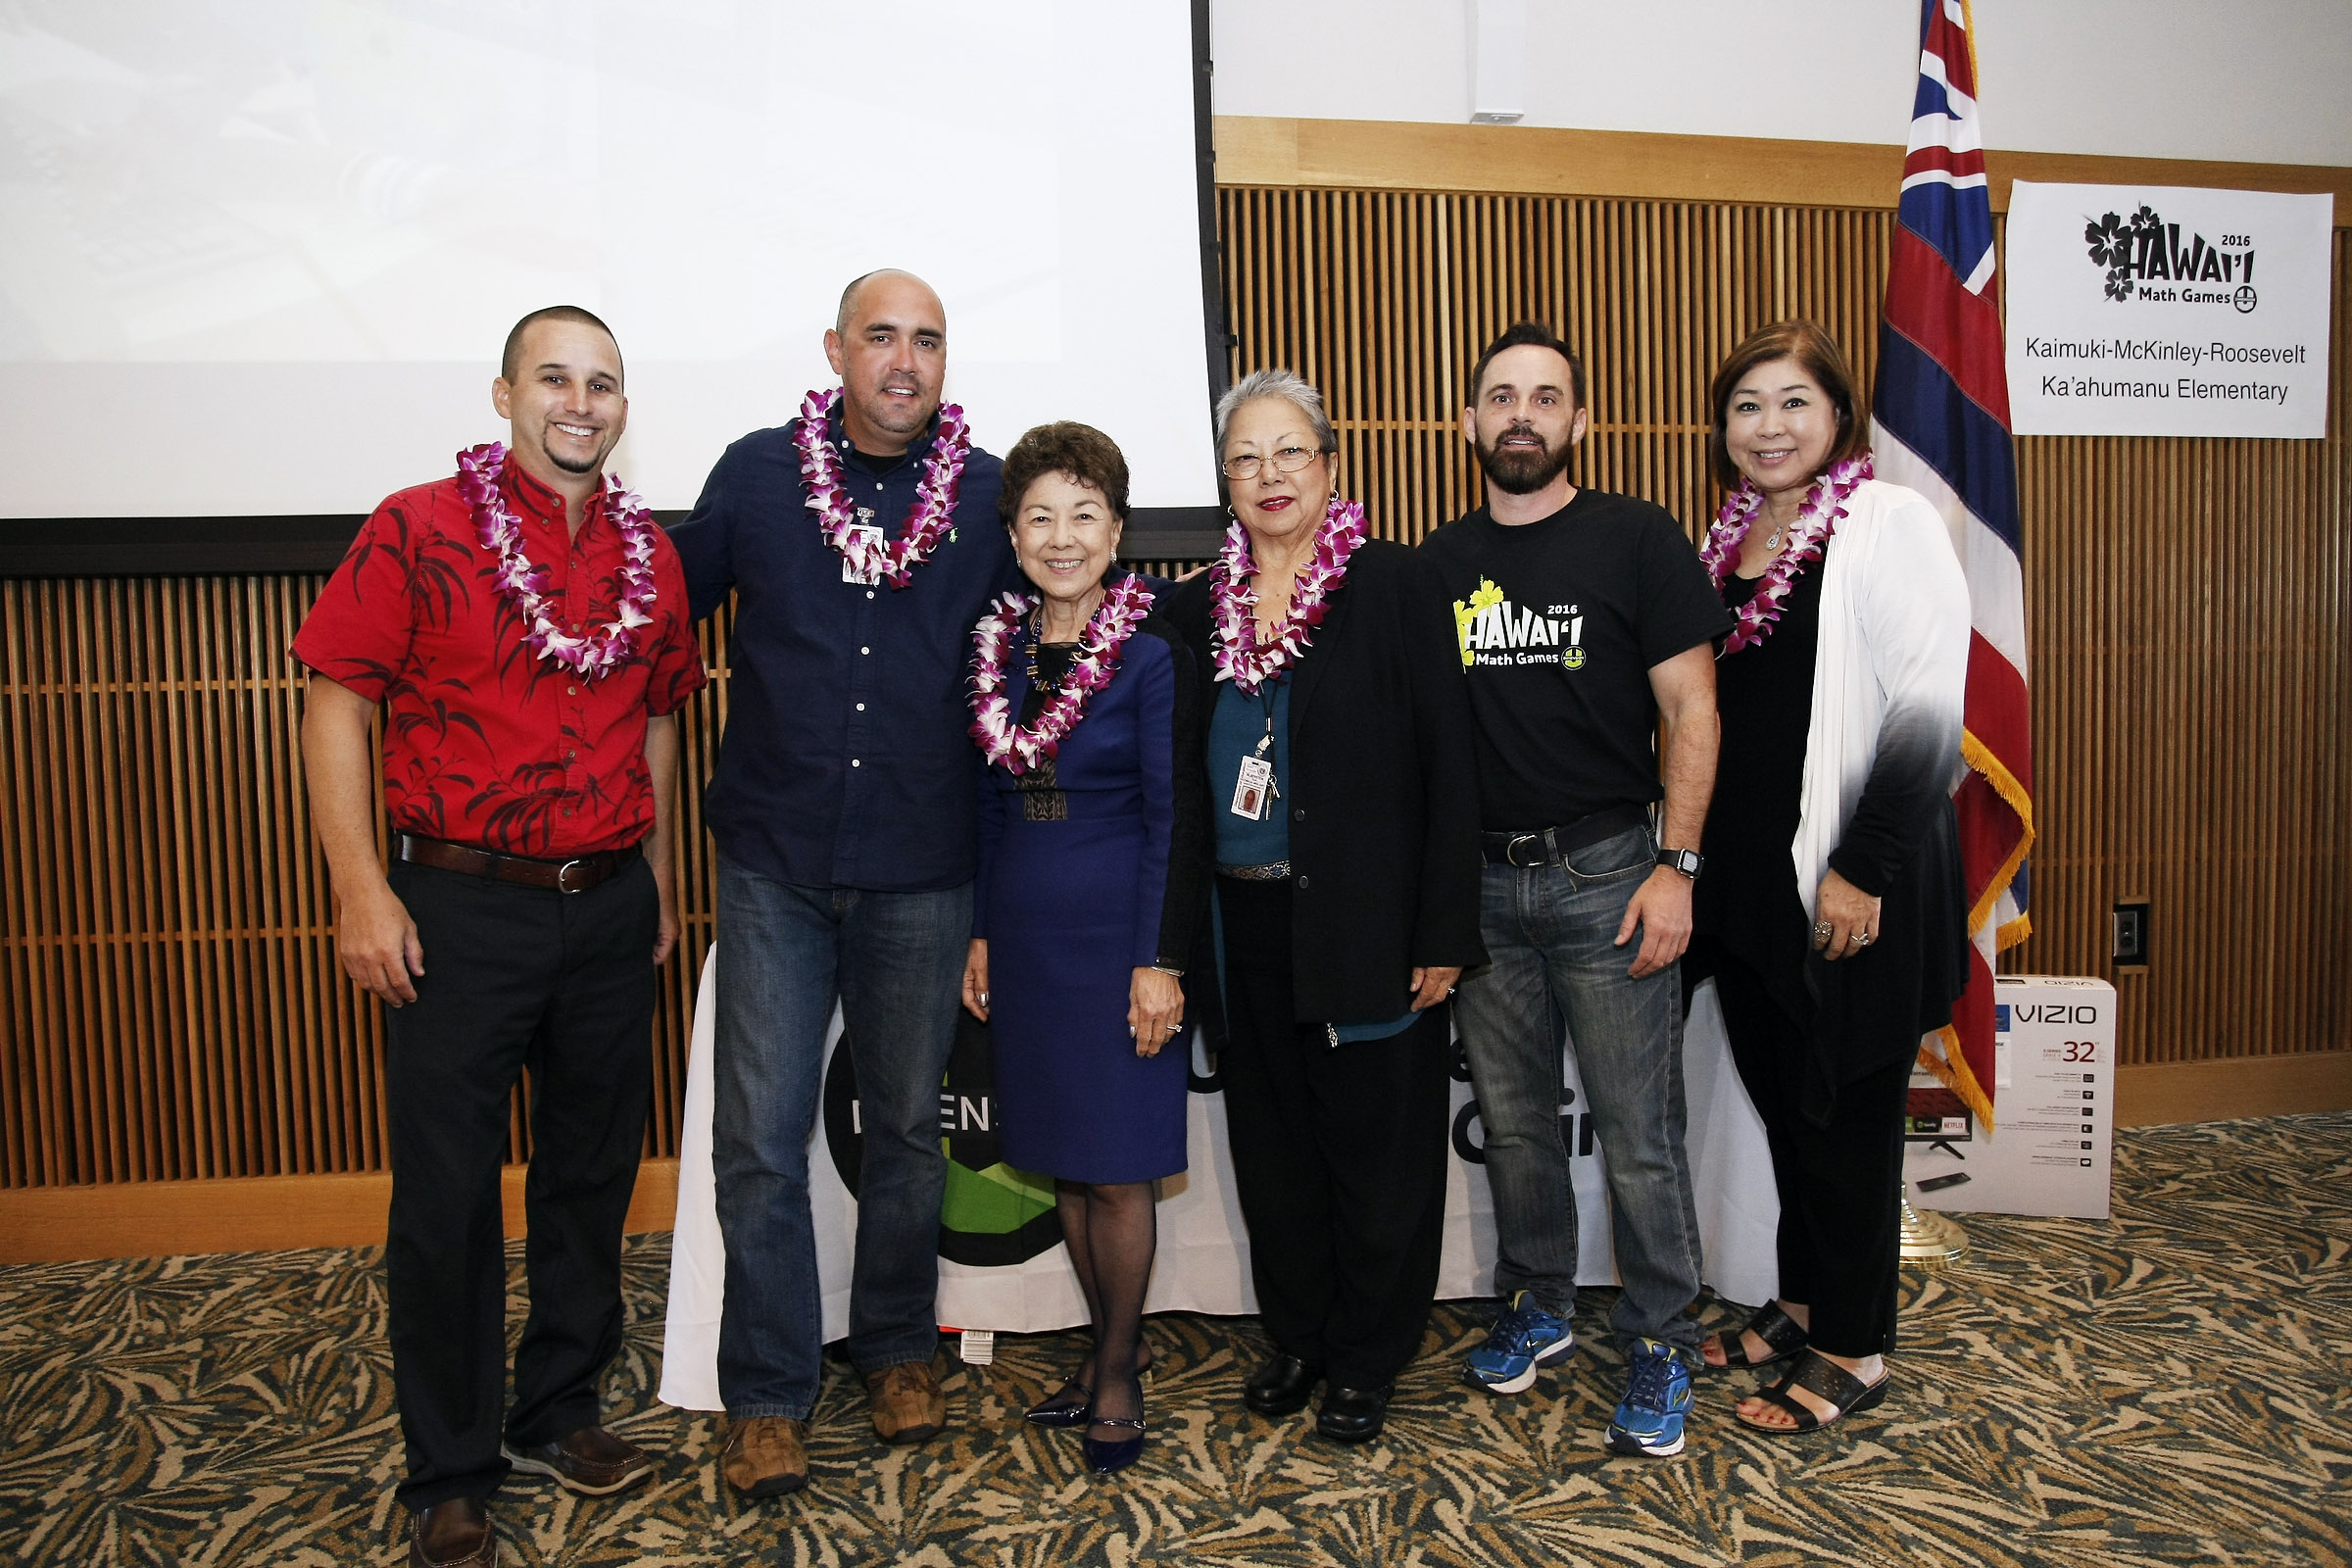 Officials at the 2016 Hawaii Math Games